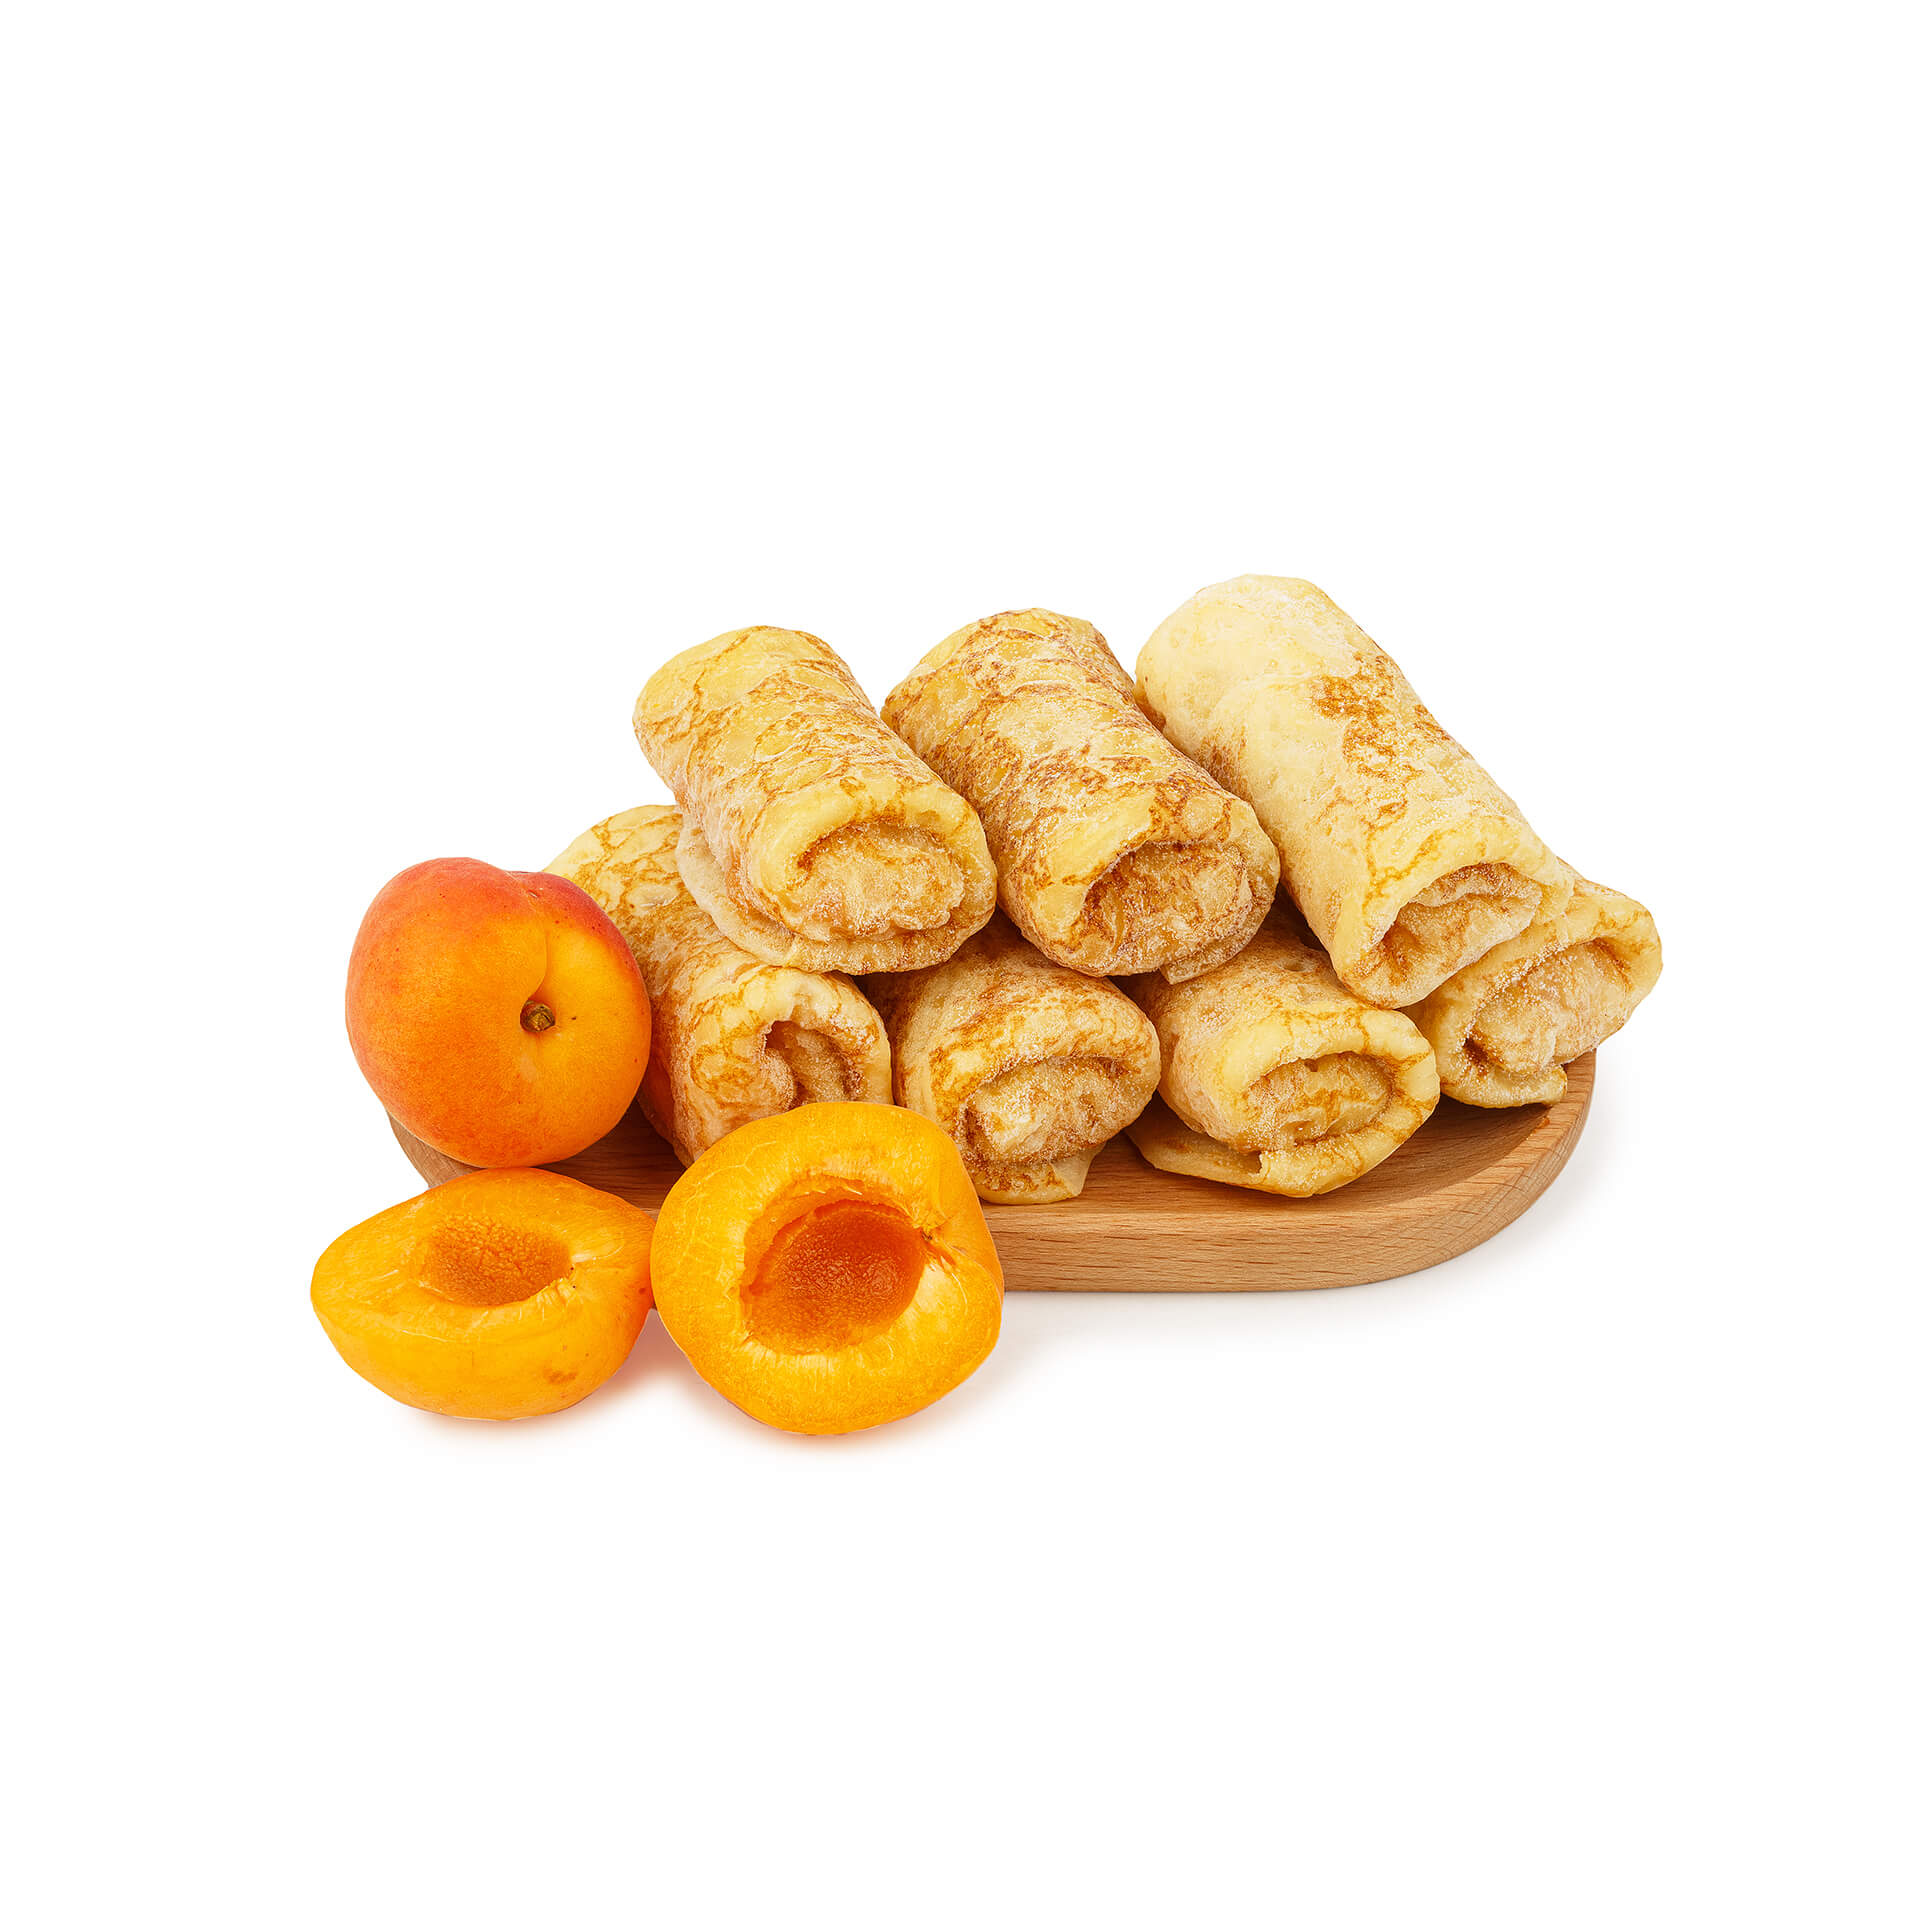 Блины с абрикосом "Домашние" полуфабрикат замороженный Алидан 3 кг 8452LED, общий вид, купить оптом с доставкой по москве и московской области, недорого, низкая цена